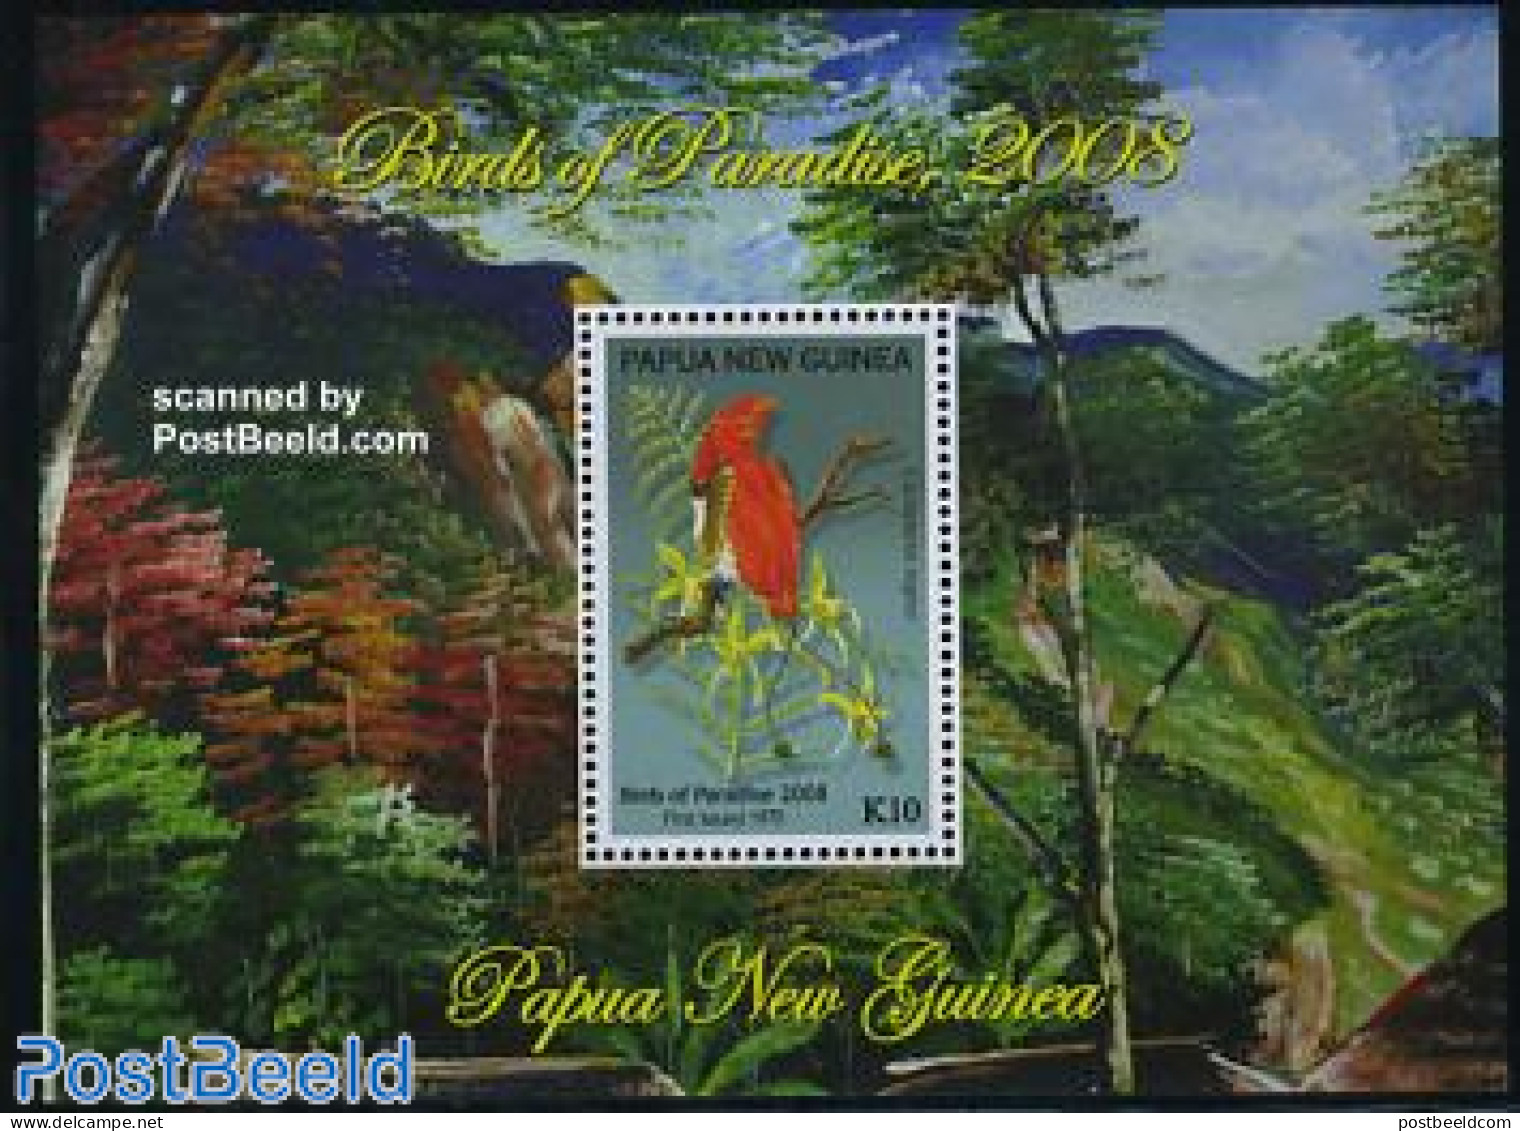 Papua New Guinea 2008 Paradise Birds S/s, Mint NH, Nature - Birds - Papouasie-Nouvelle-Guinée